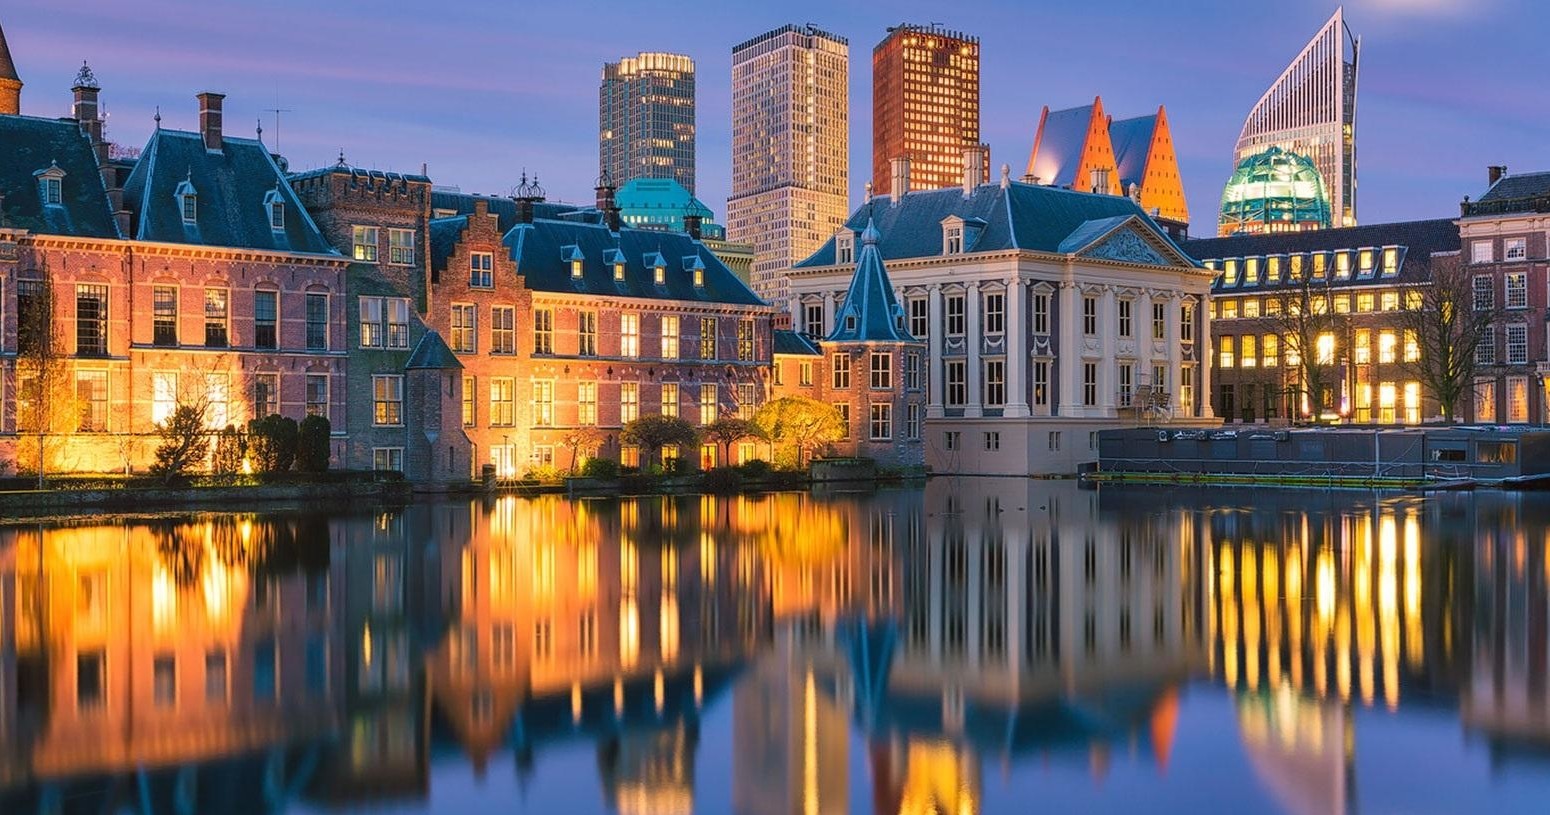 Excursión a Róterdam y La Haya - Accommodations in Ámsterdam